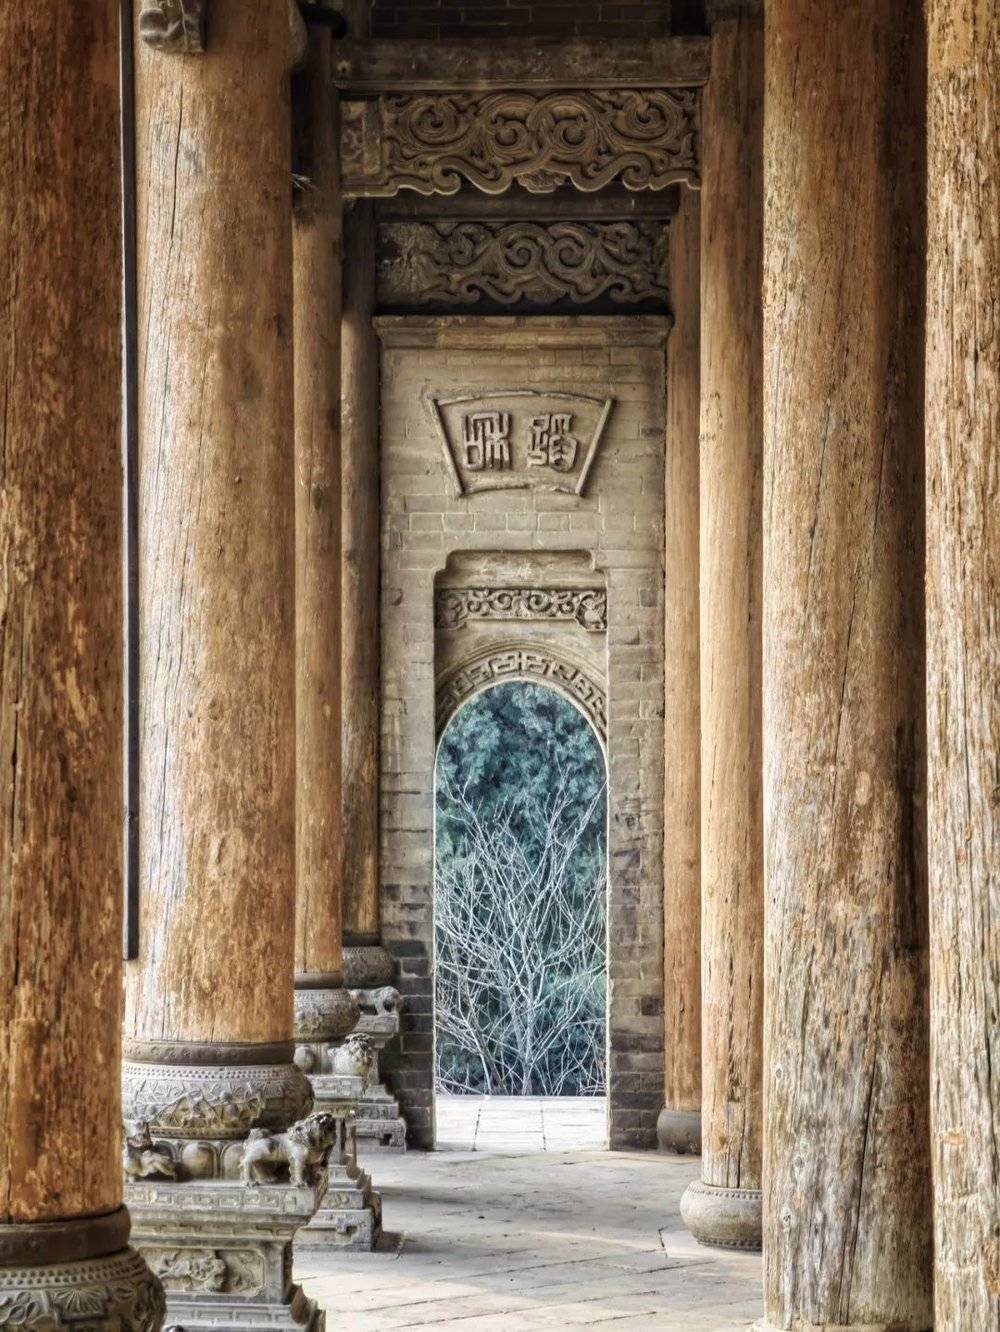 中国木柱，与西方的石柱师出同源，却又风格迥异。摄影/逻辑羊社长<br>